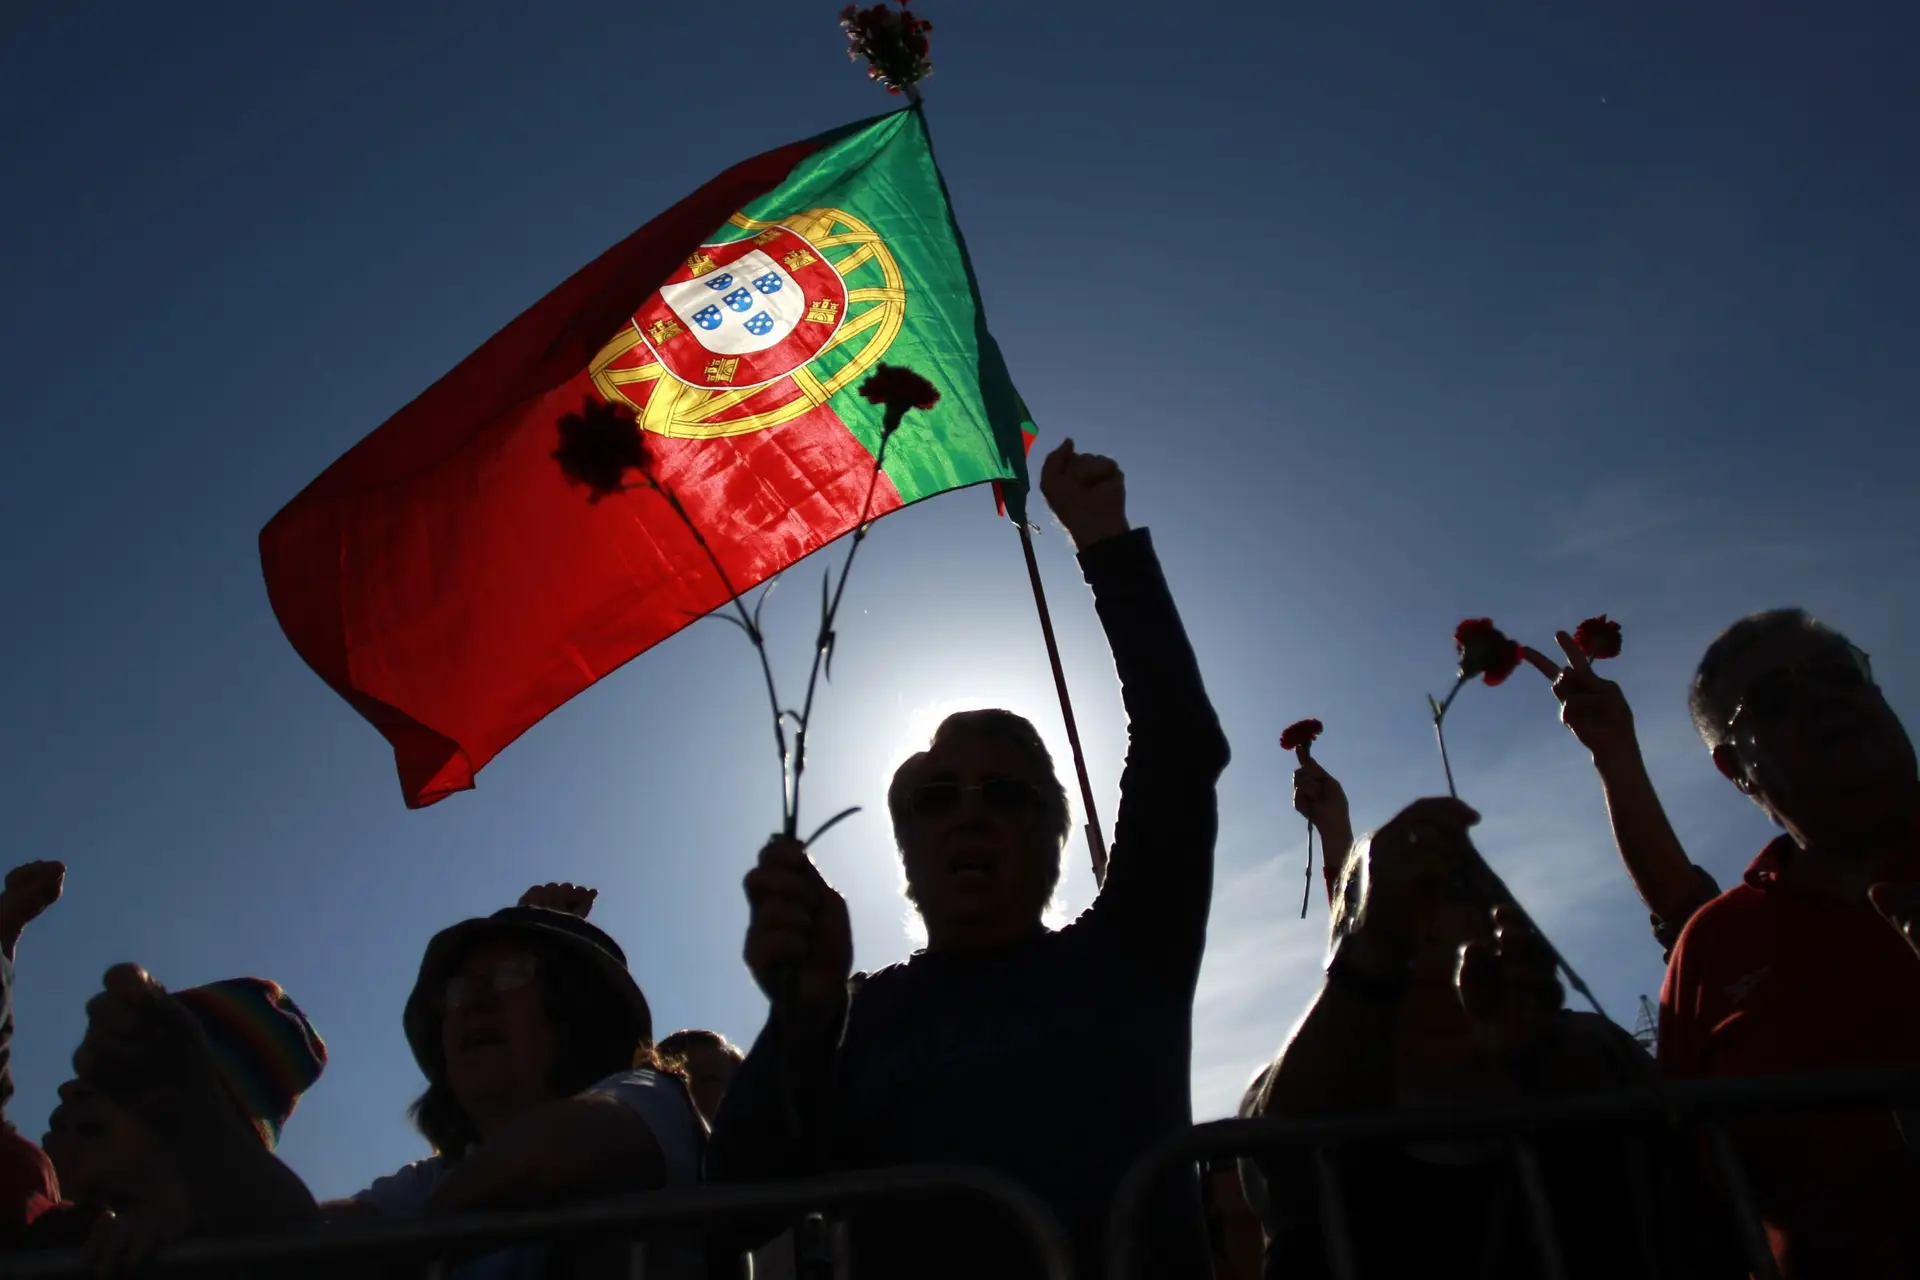 Portugal desceu uma posição no Índice Global de Paz